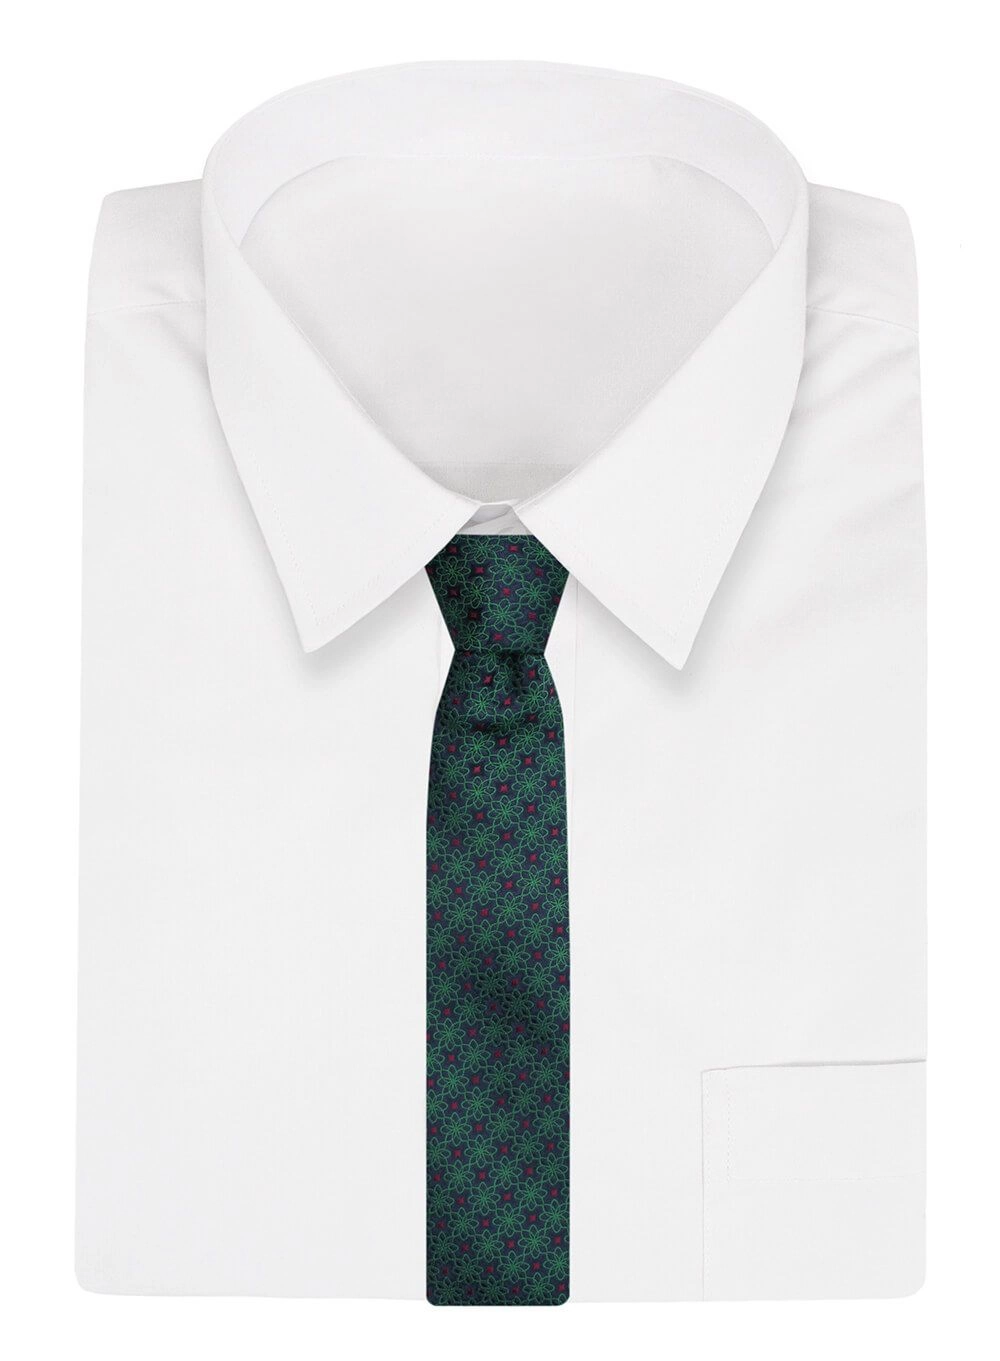 Krawat Alties (7 cm) - Zielony w Geometryczny Wzór